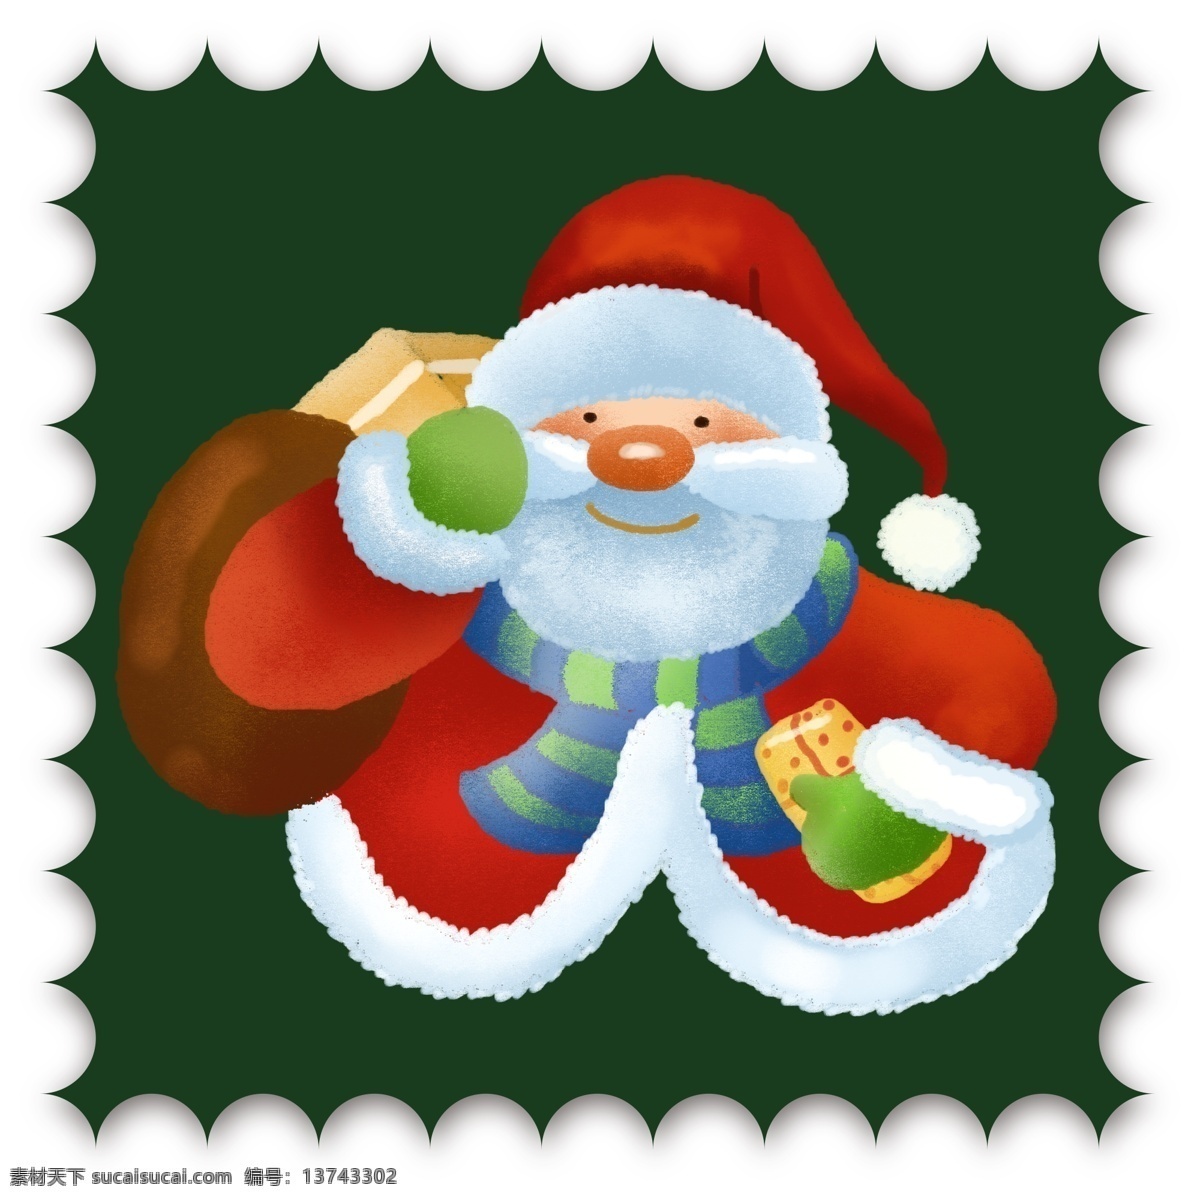 手绘 风 圣诞 邮票 小 贴纸 元素 圣诞邮票 小贴纸 圣诞老人 集邮 手绘风